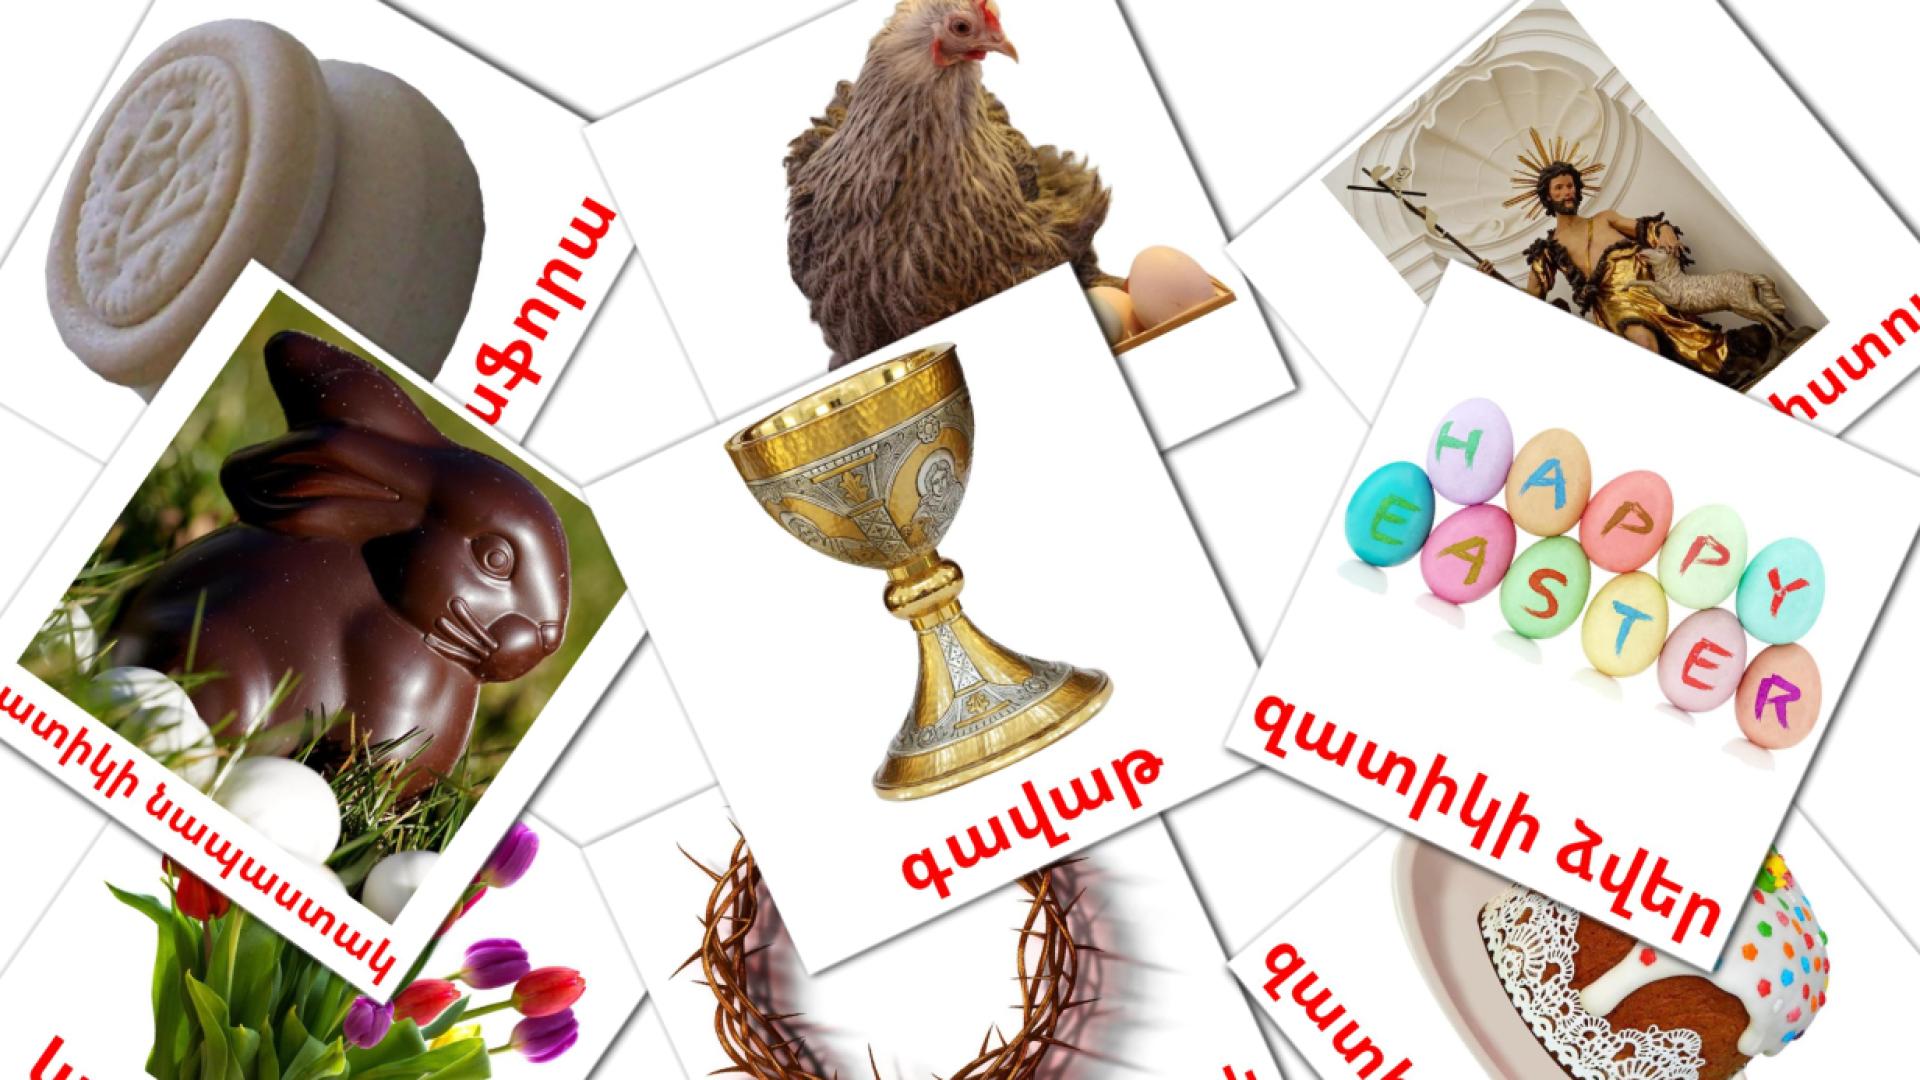 Pasen - armeensee woordenschatkaarten